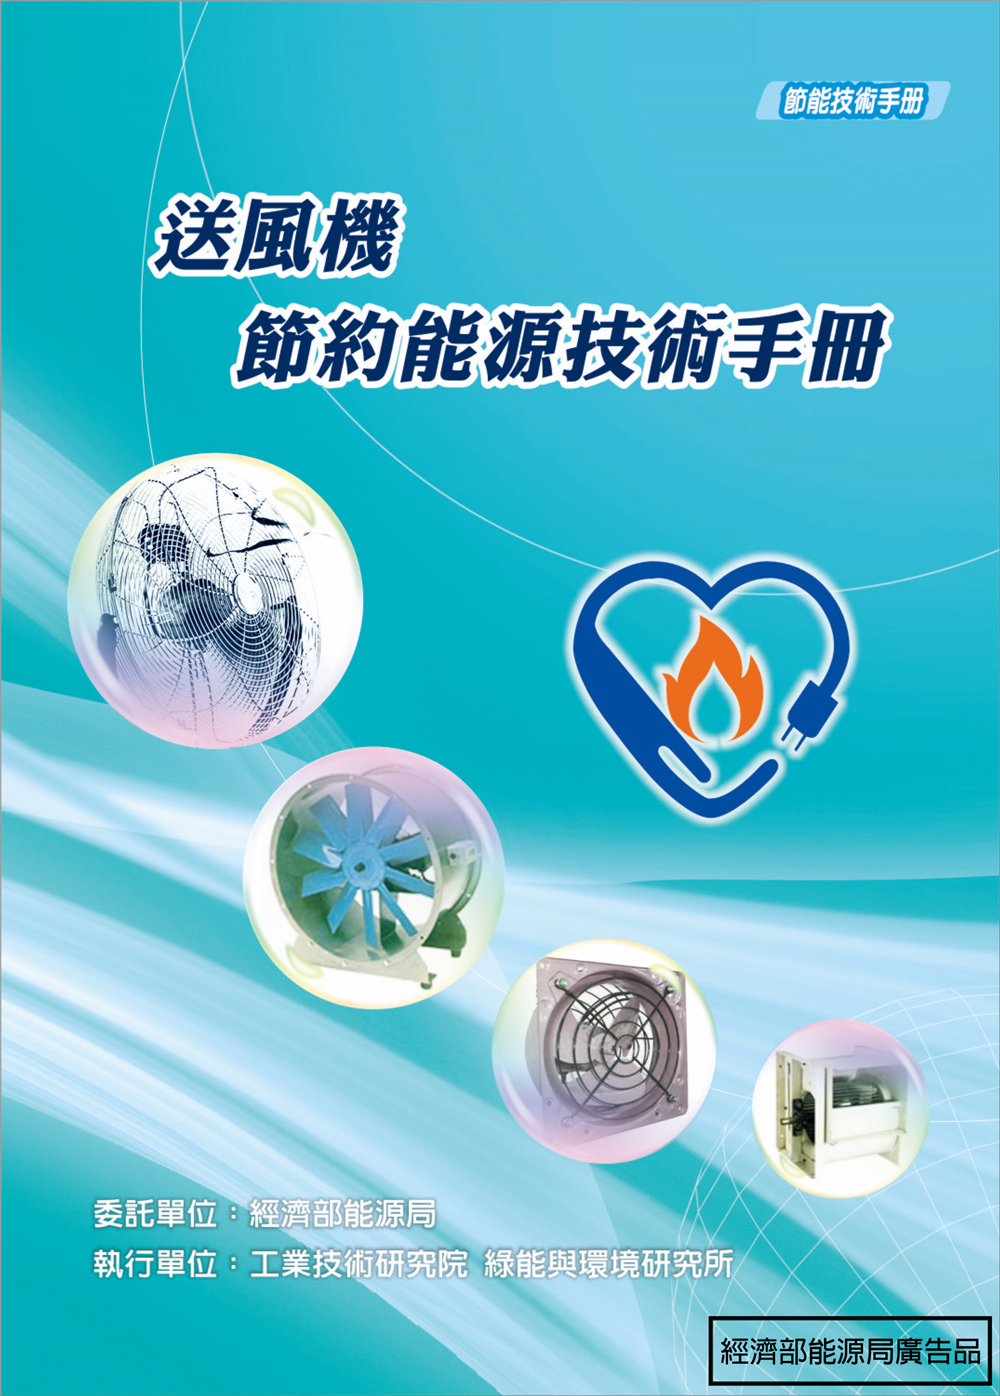 送風機節約能源技術手冊 的封面圖